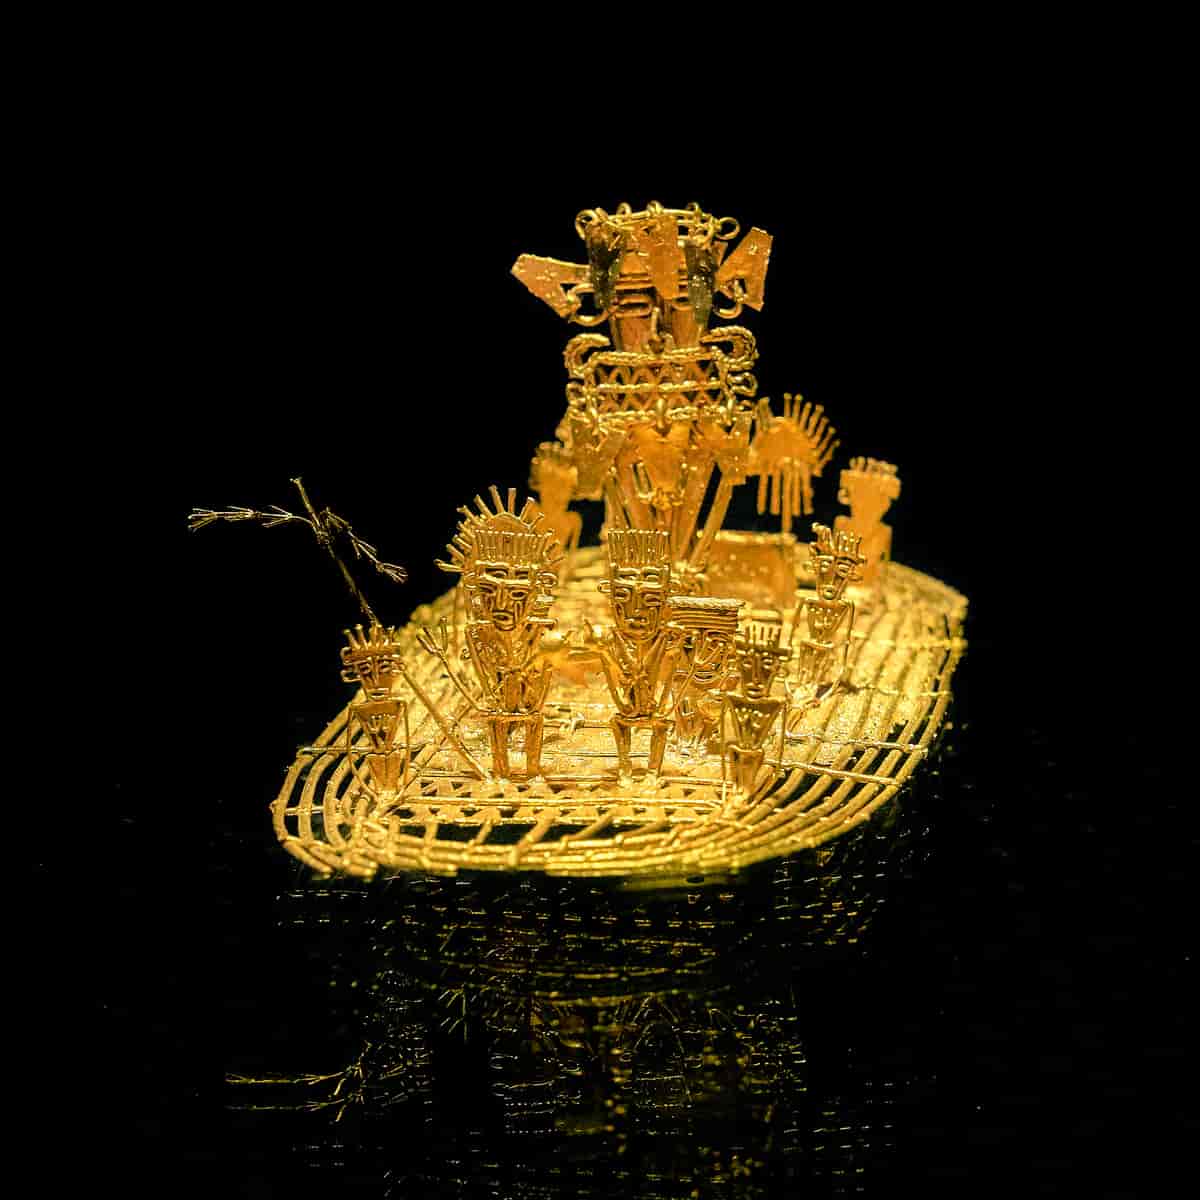 Miniatyr i gull av Muisca-herskeren. 